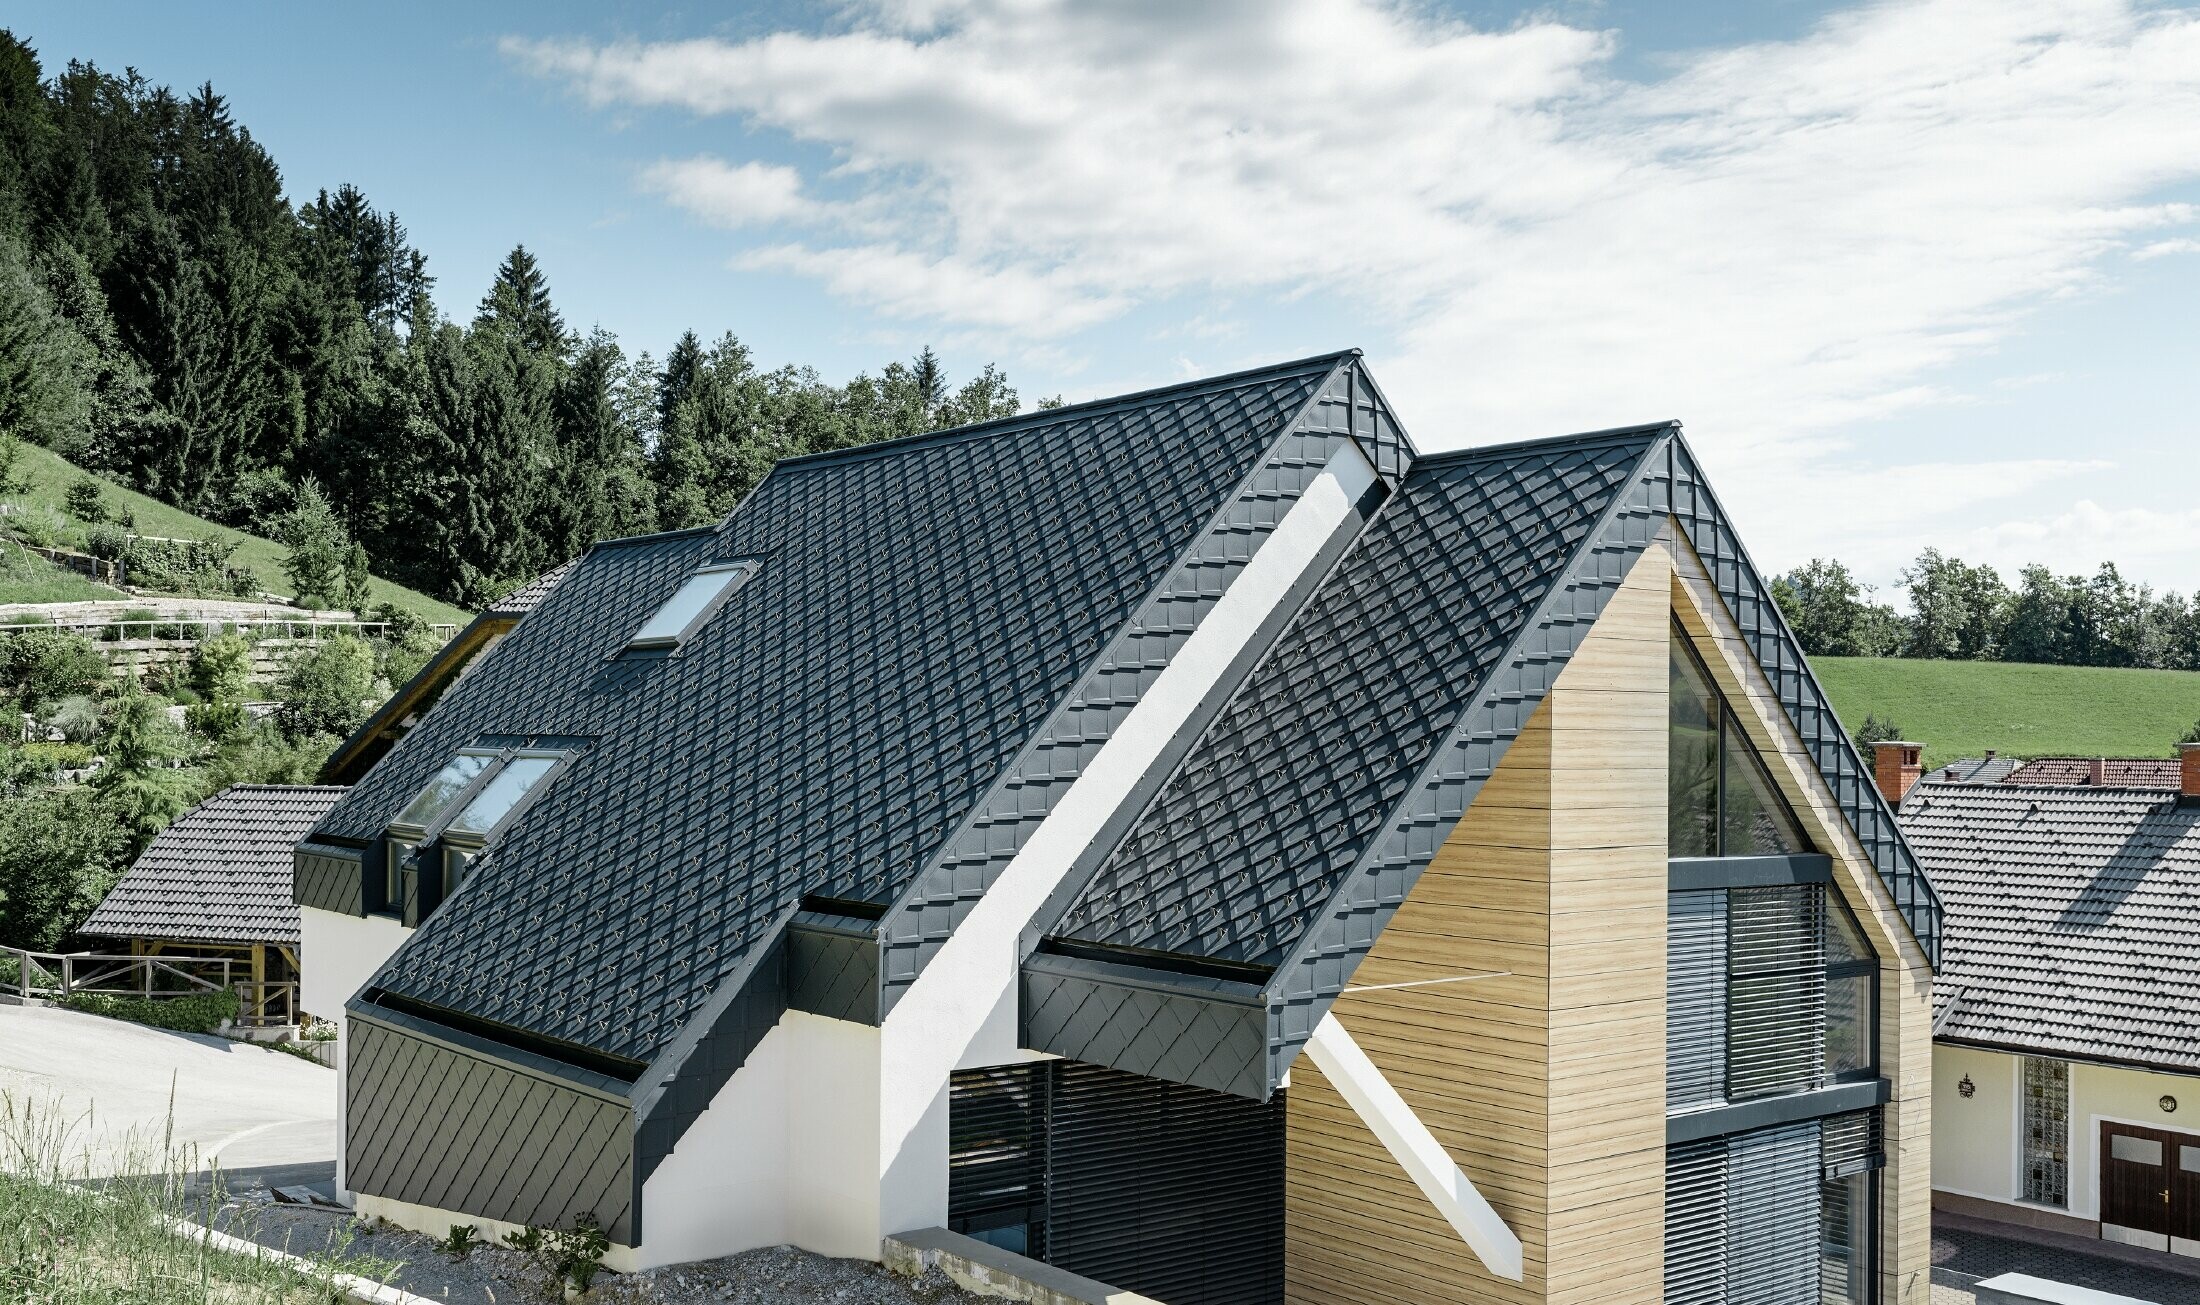 Einfamilienhaus mit Satteldach ohne Dachvorsprung mit einer Fassade in Holzoptik und einem Aluminiumdach in anthrazit